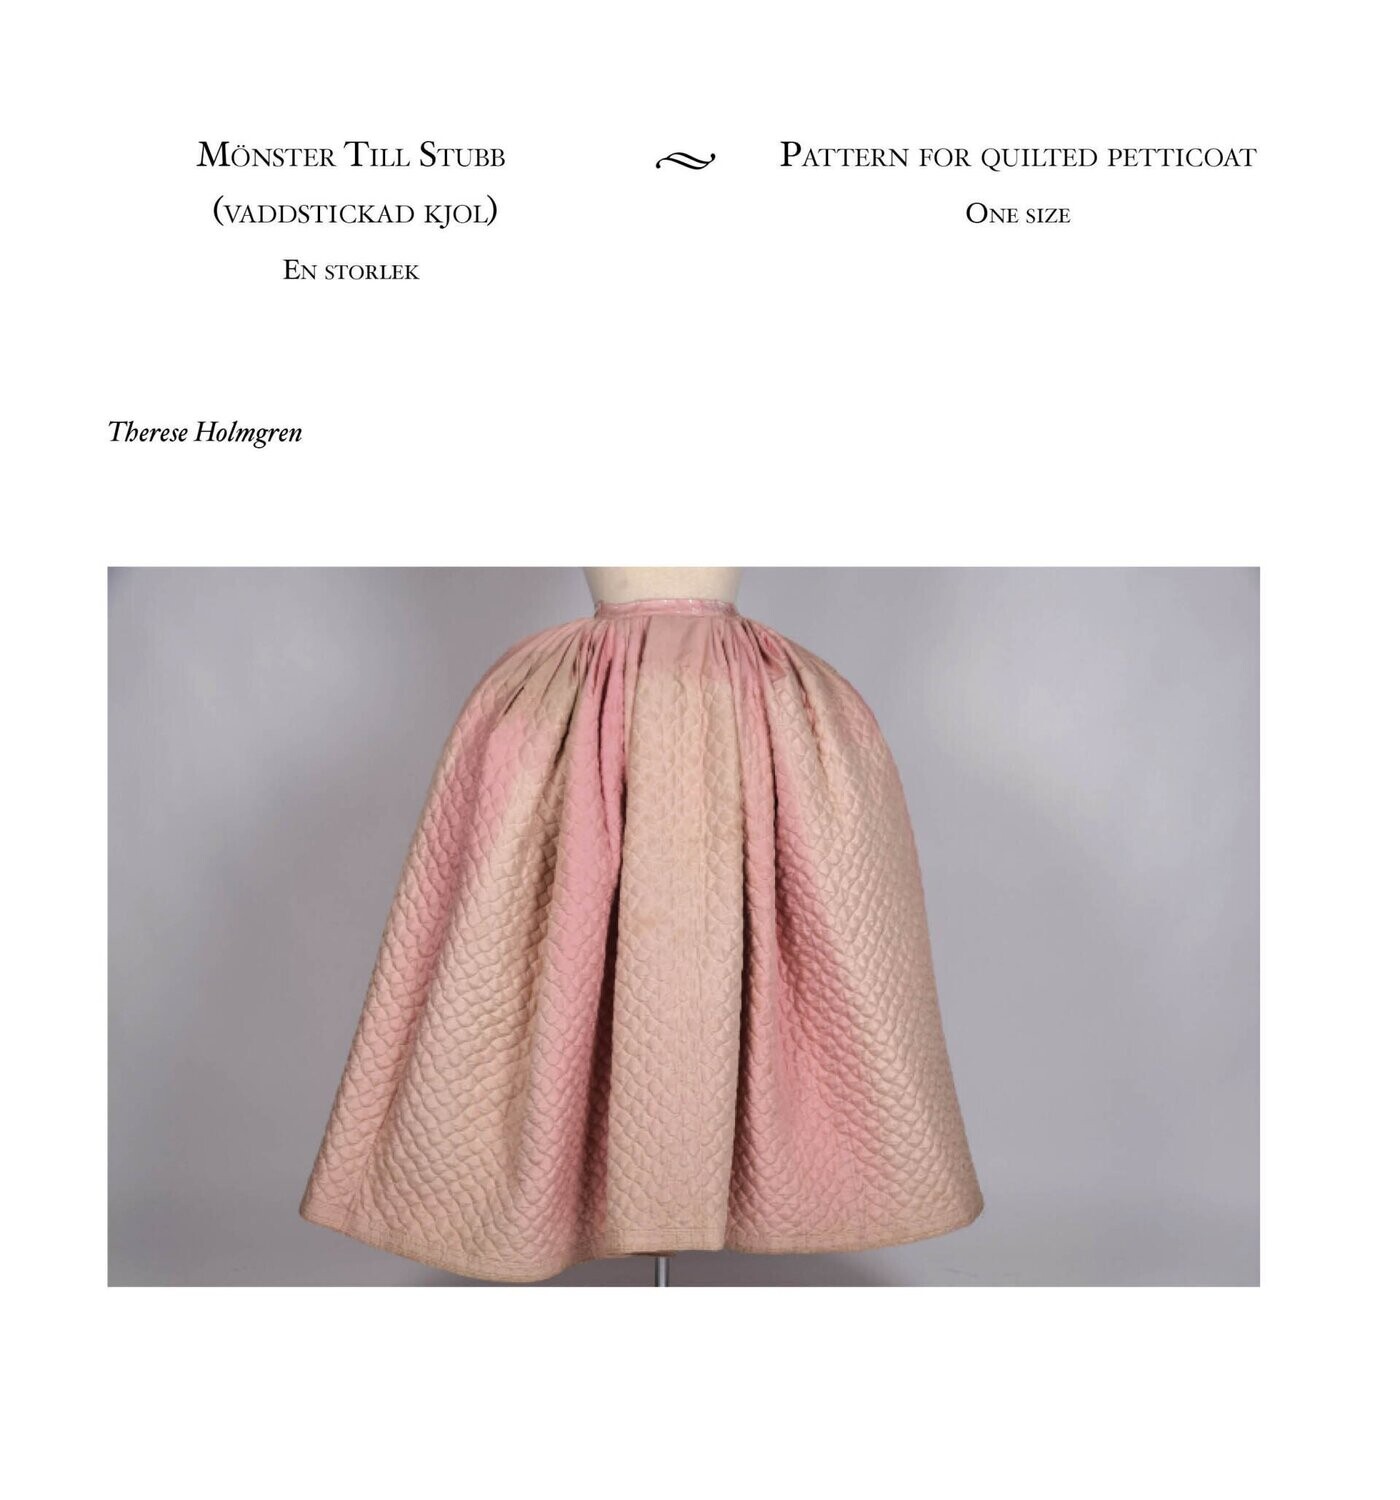 Mönster till stubb (vaddstickad kjol) PDF